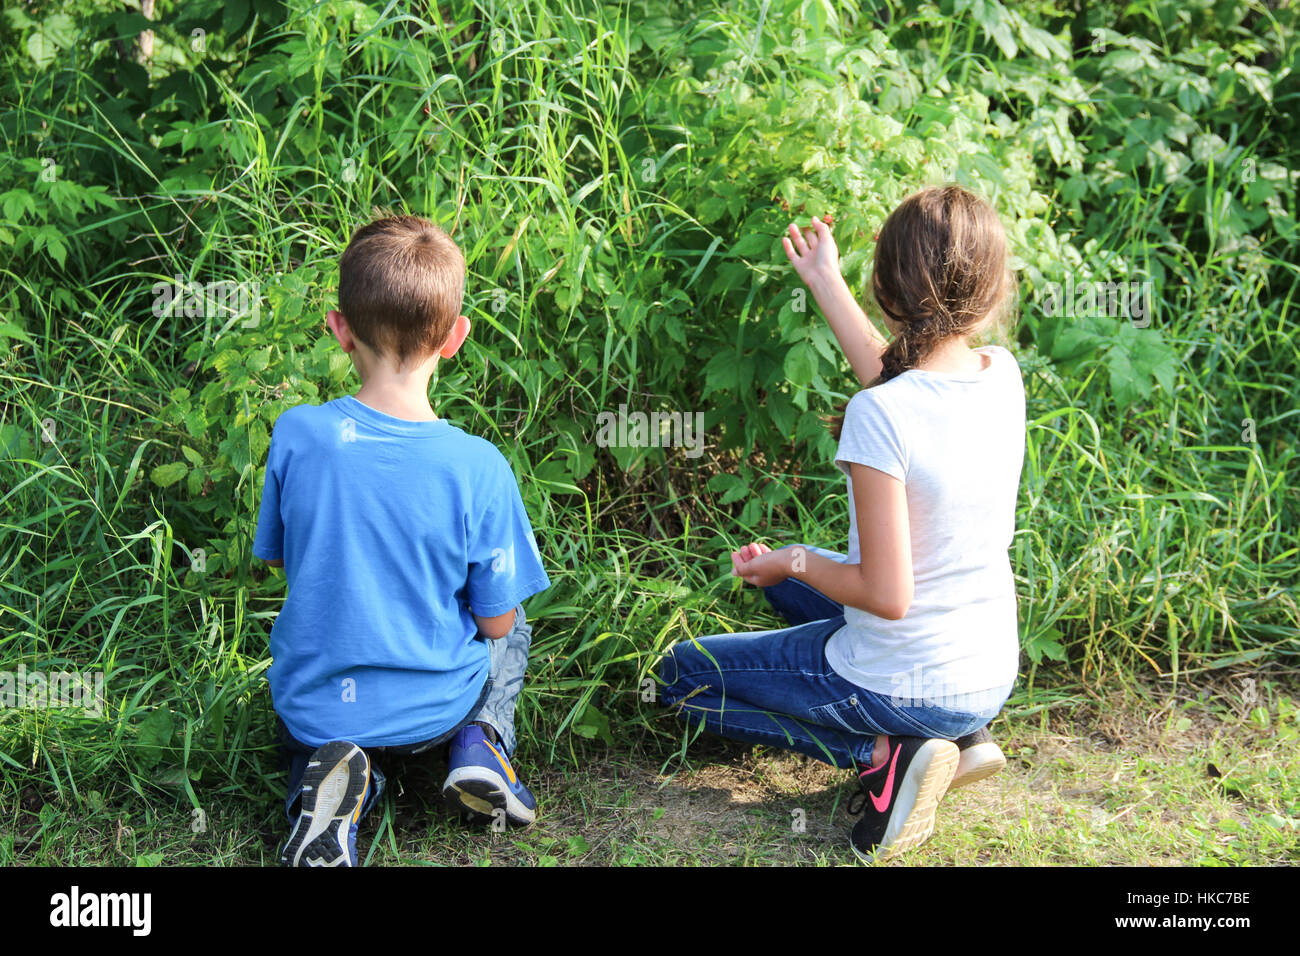 Children picking raspberries Stock Photo